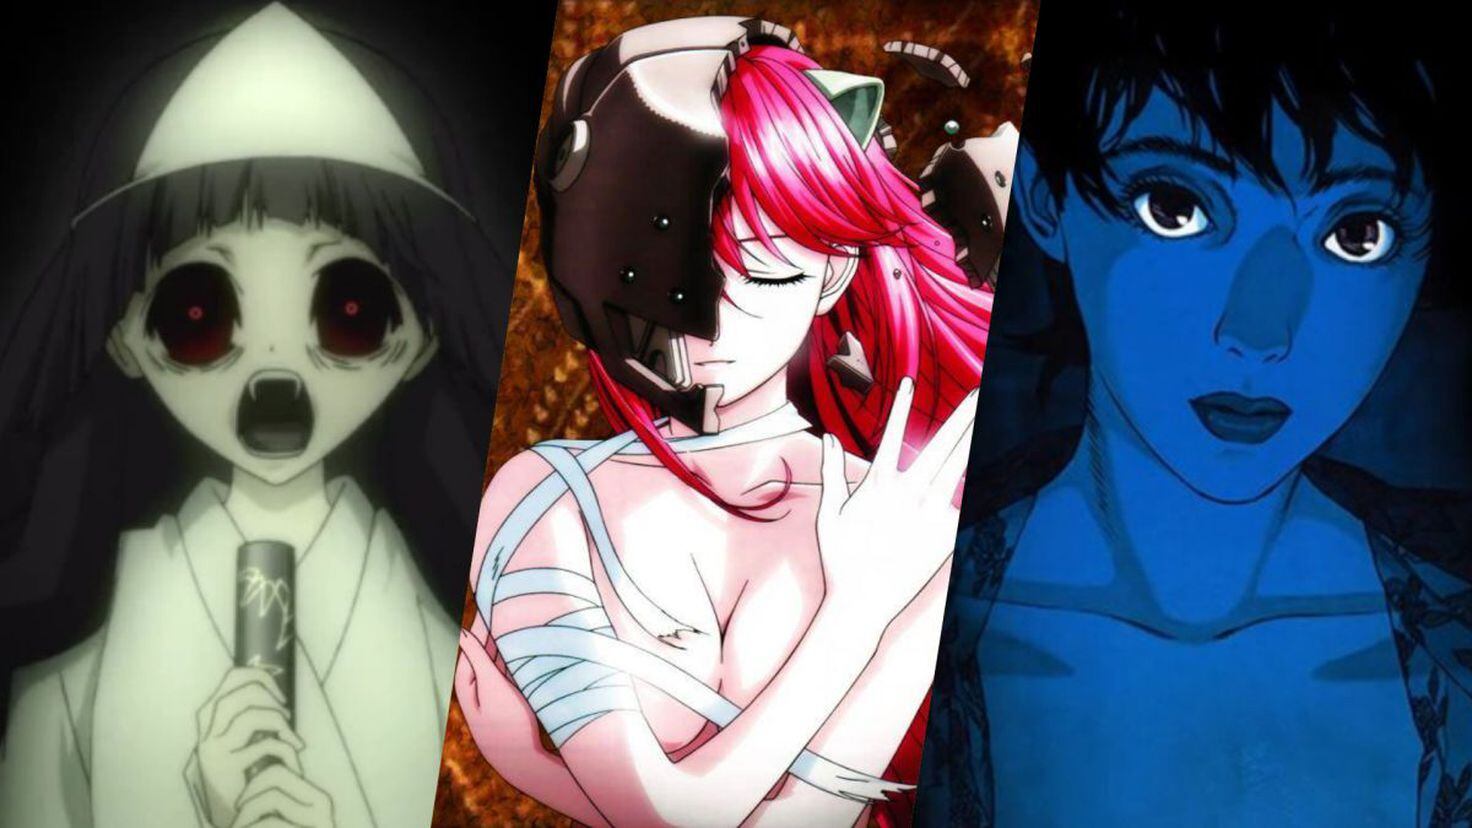 100 Series de Anime Más Populares: Para Todos los Gustos y Géneros